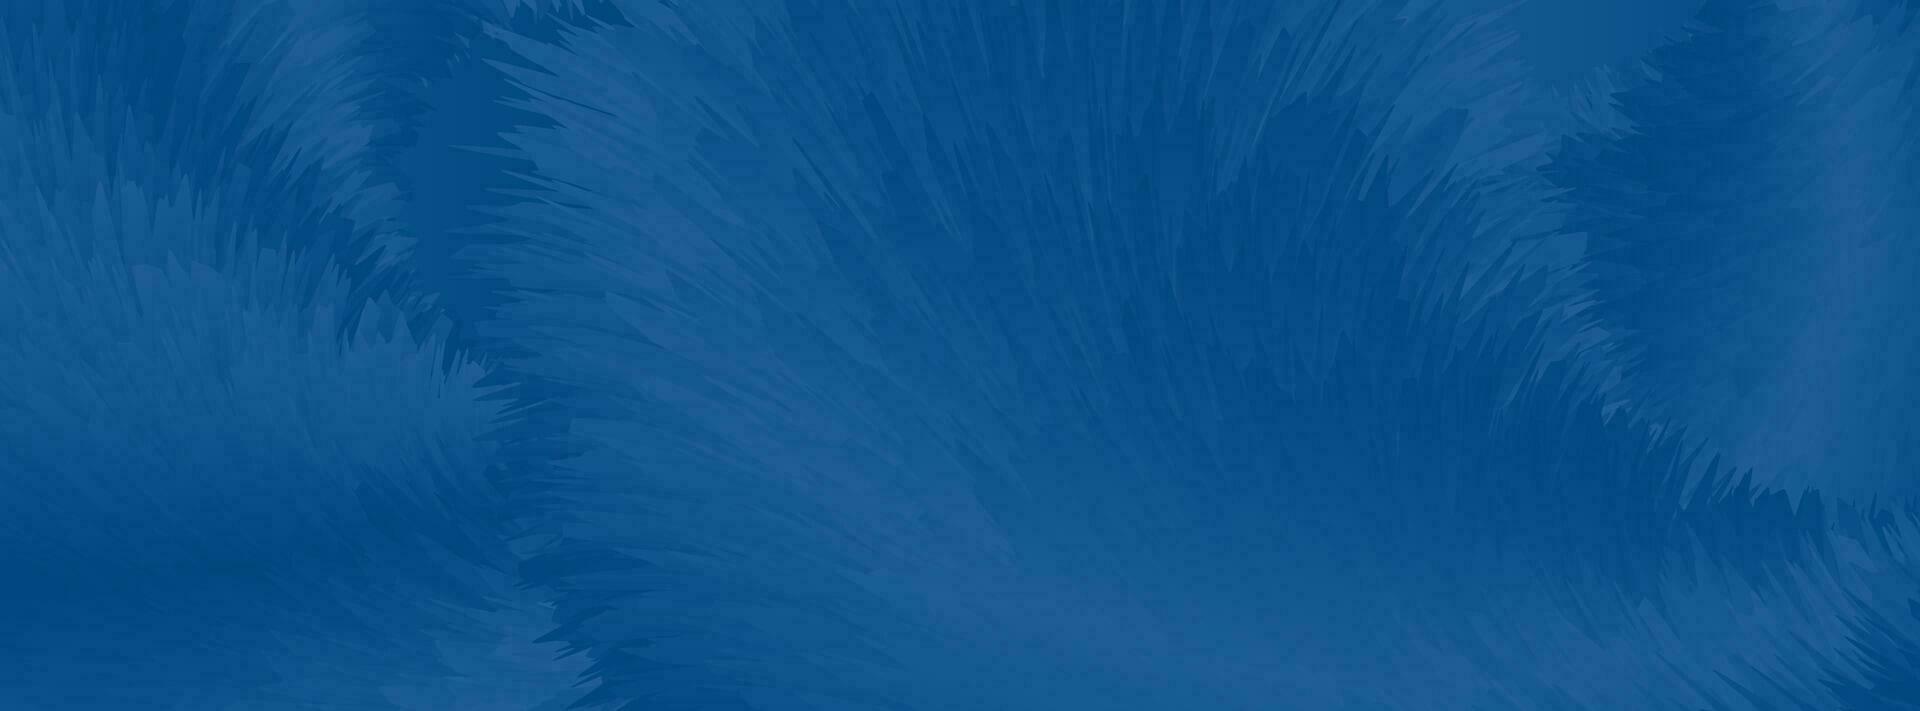 klassiek blauw abstract pluizig vacht golven banier ontwerp vector